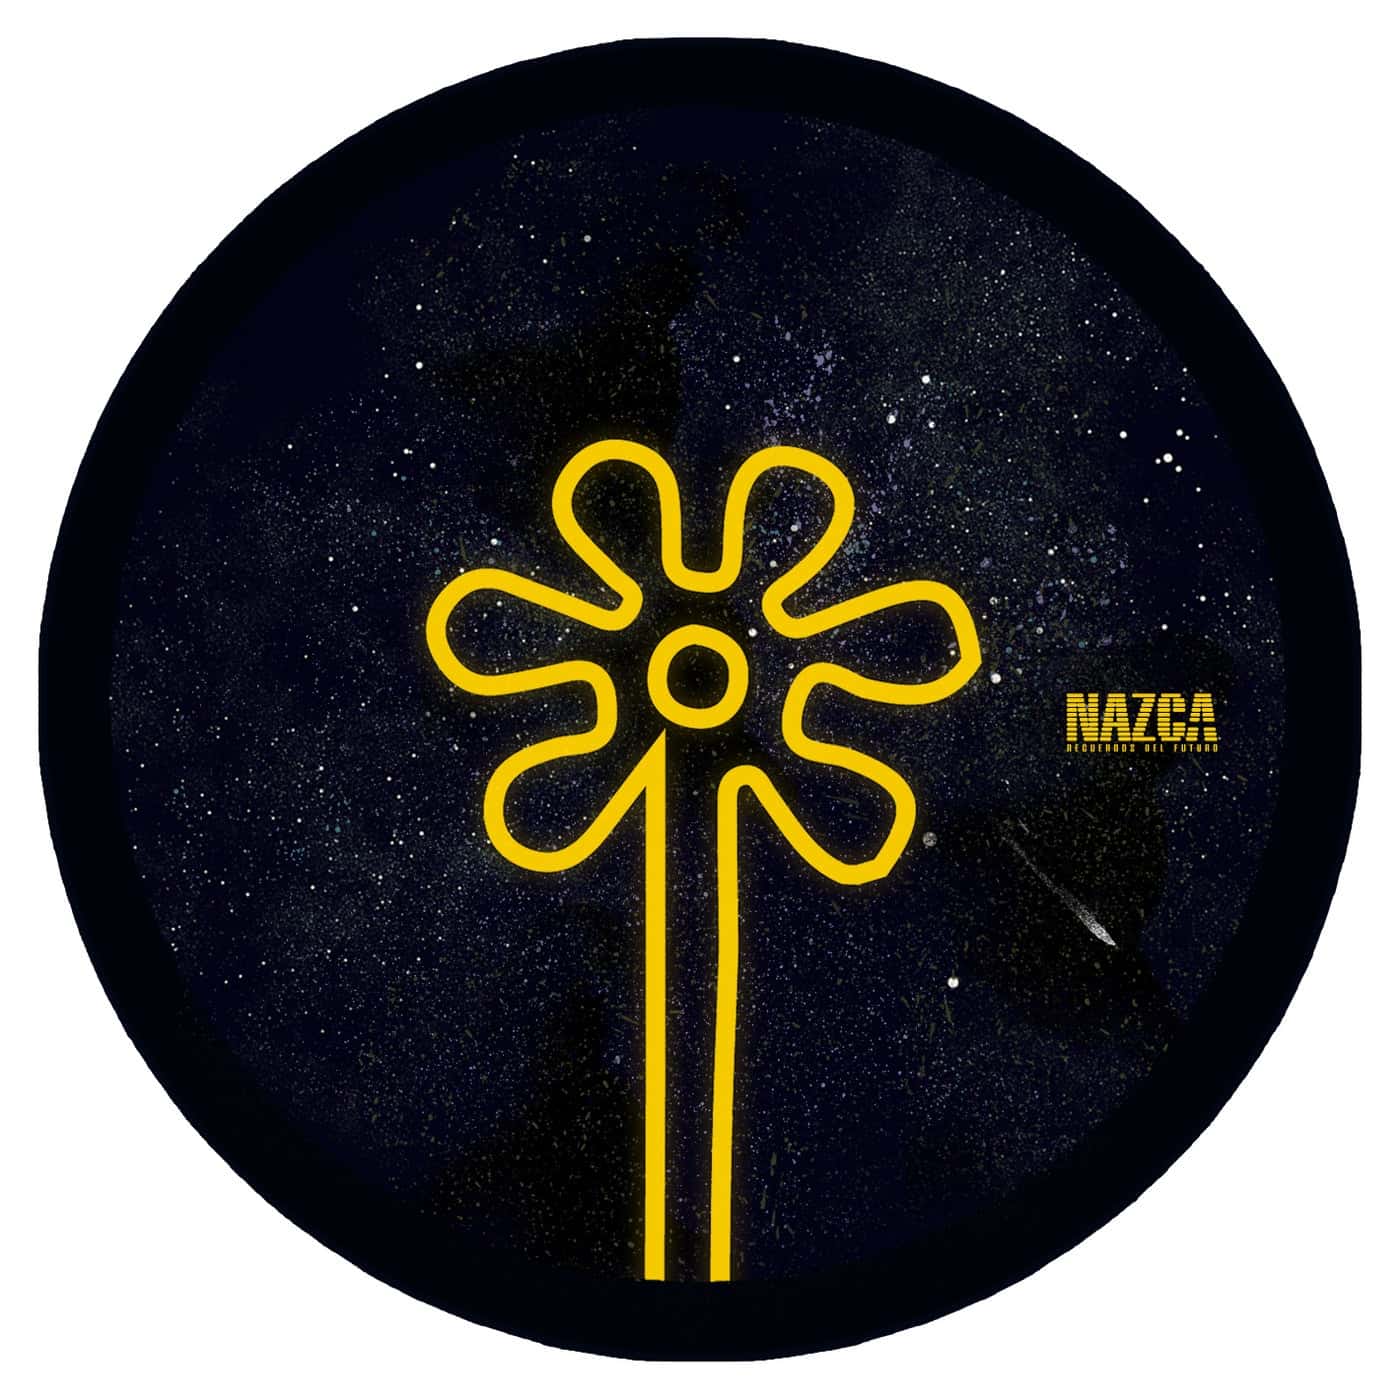 image cover: Los Suruba - En Las Dalias, The Remixes Part 4 / NAZCA029